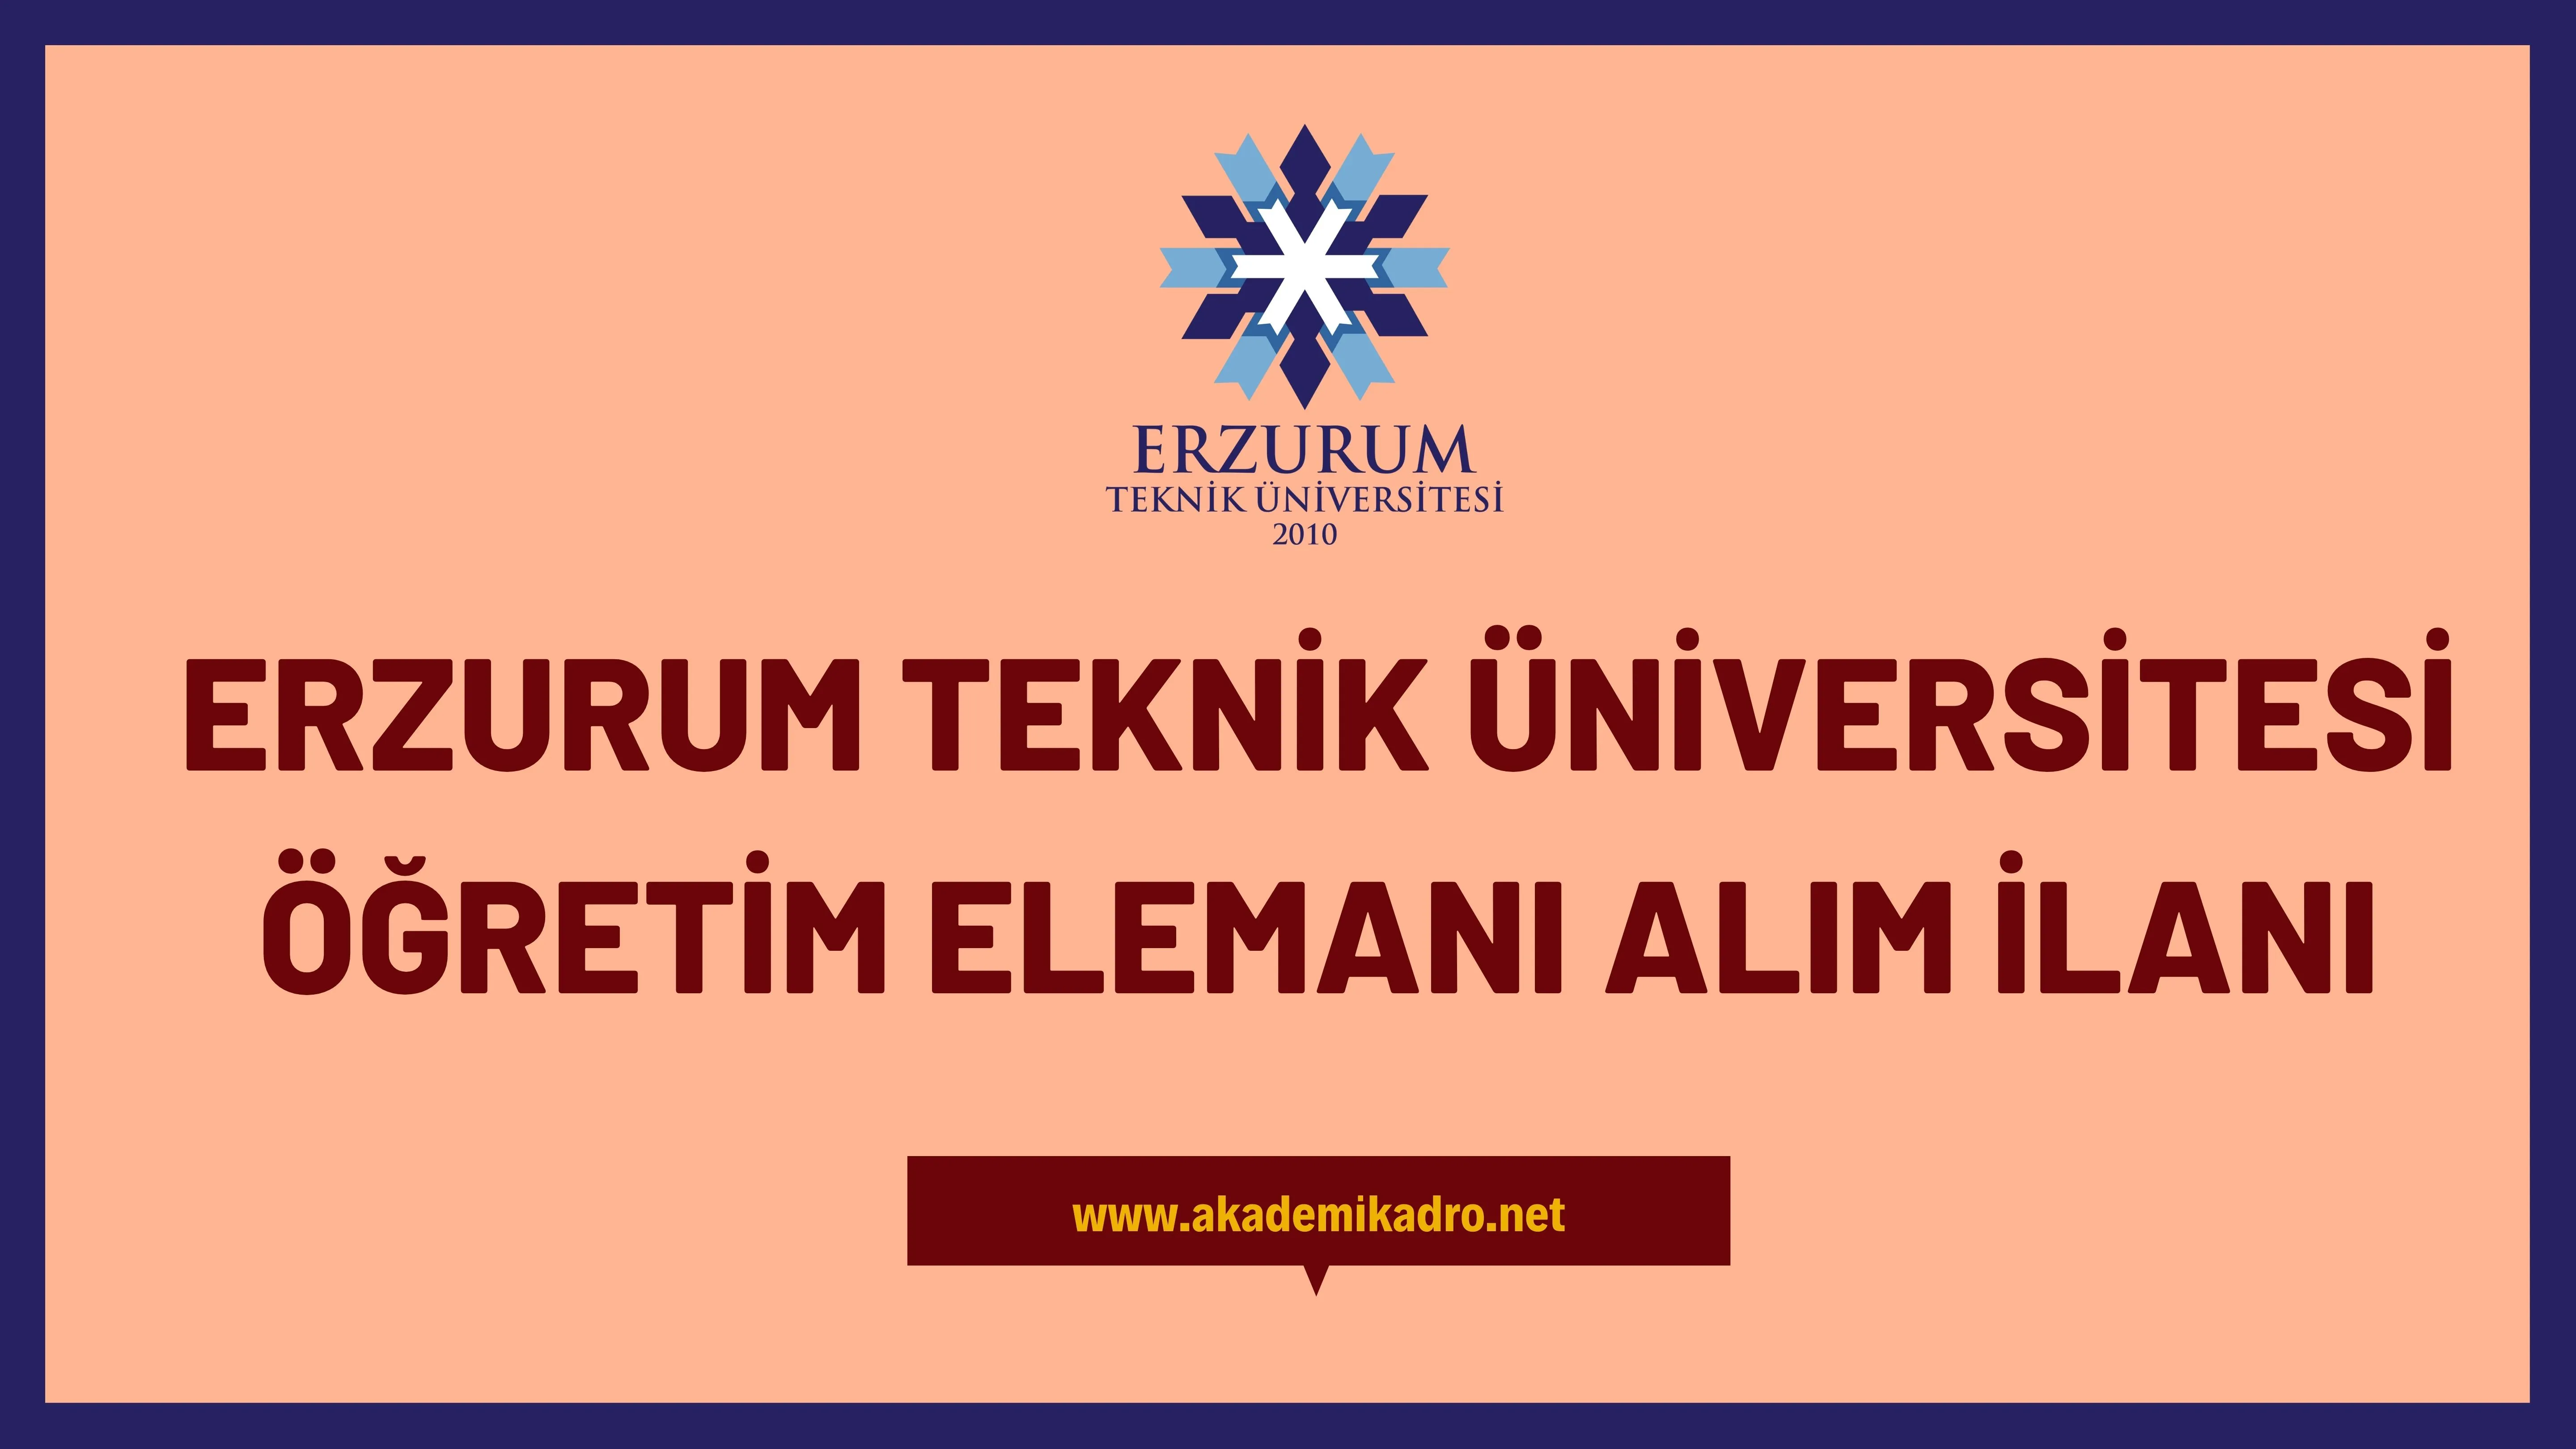 Erzurum Teknik Üniversitesi 4 Öğretim üyesi ve Araştırma görevlisi alacaktır. Son başvuru tarihi 12 Ocak 2023